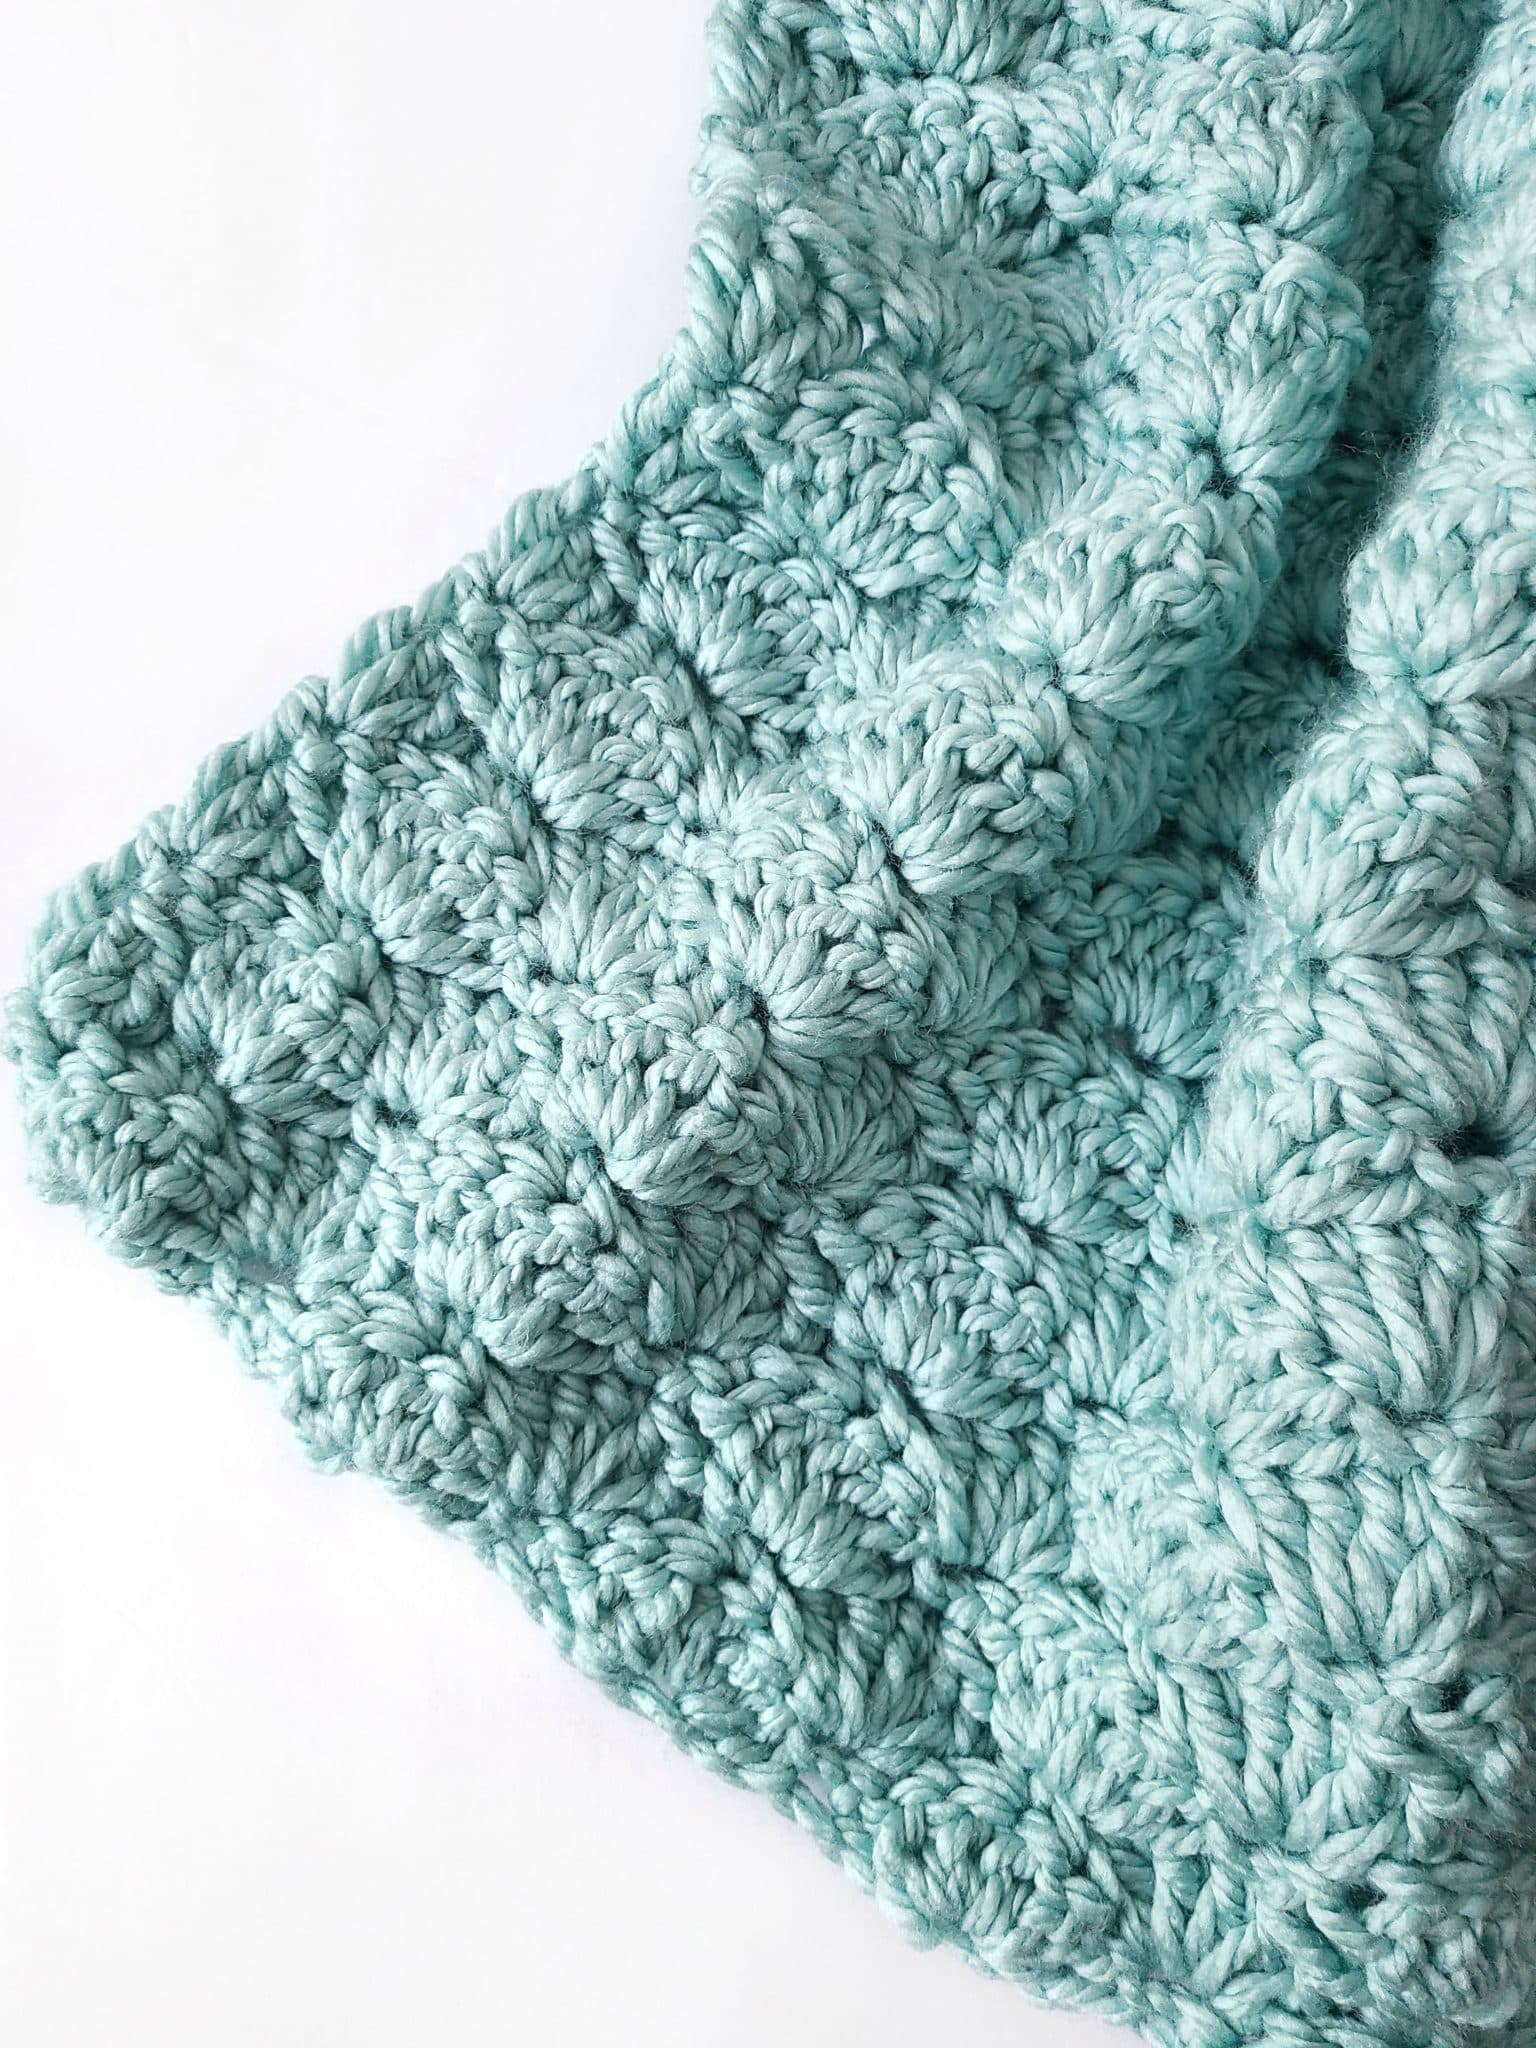 Beginner Quick and Easy Crochet Blanket Patterns - Easy Crochet